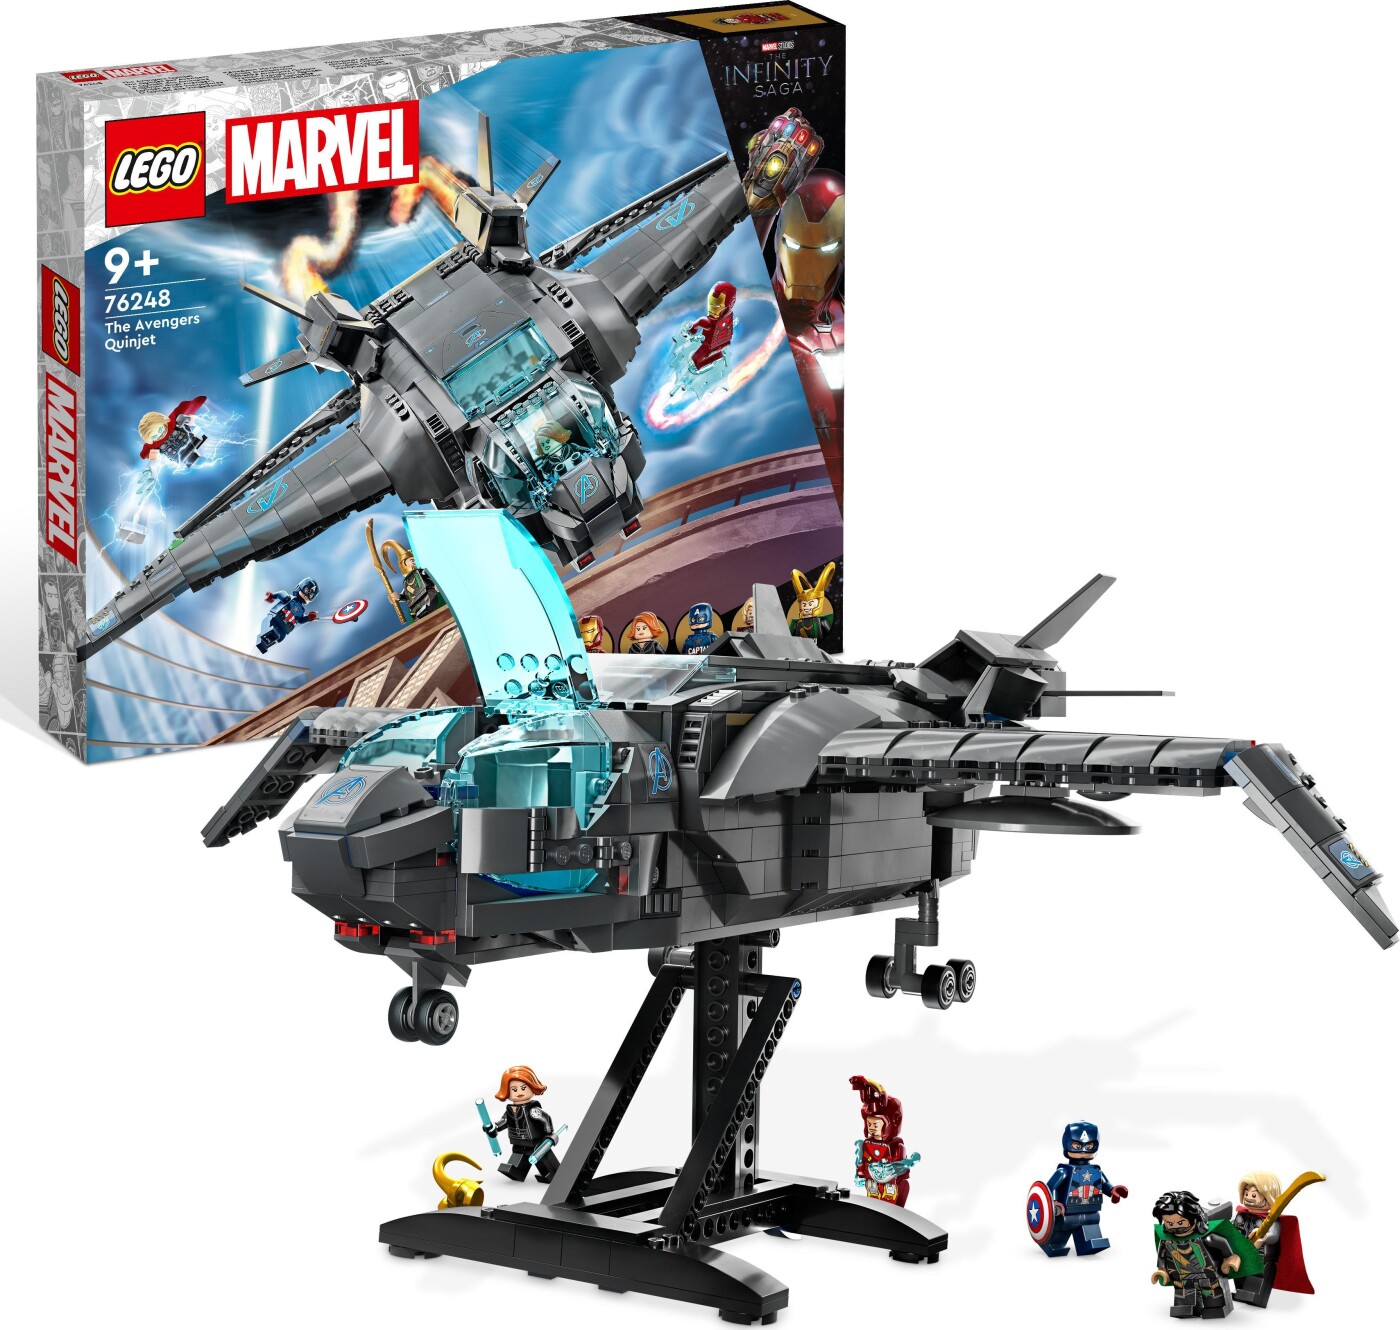 Billede af Lego Marvel - Avengers Quinjet - 76248